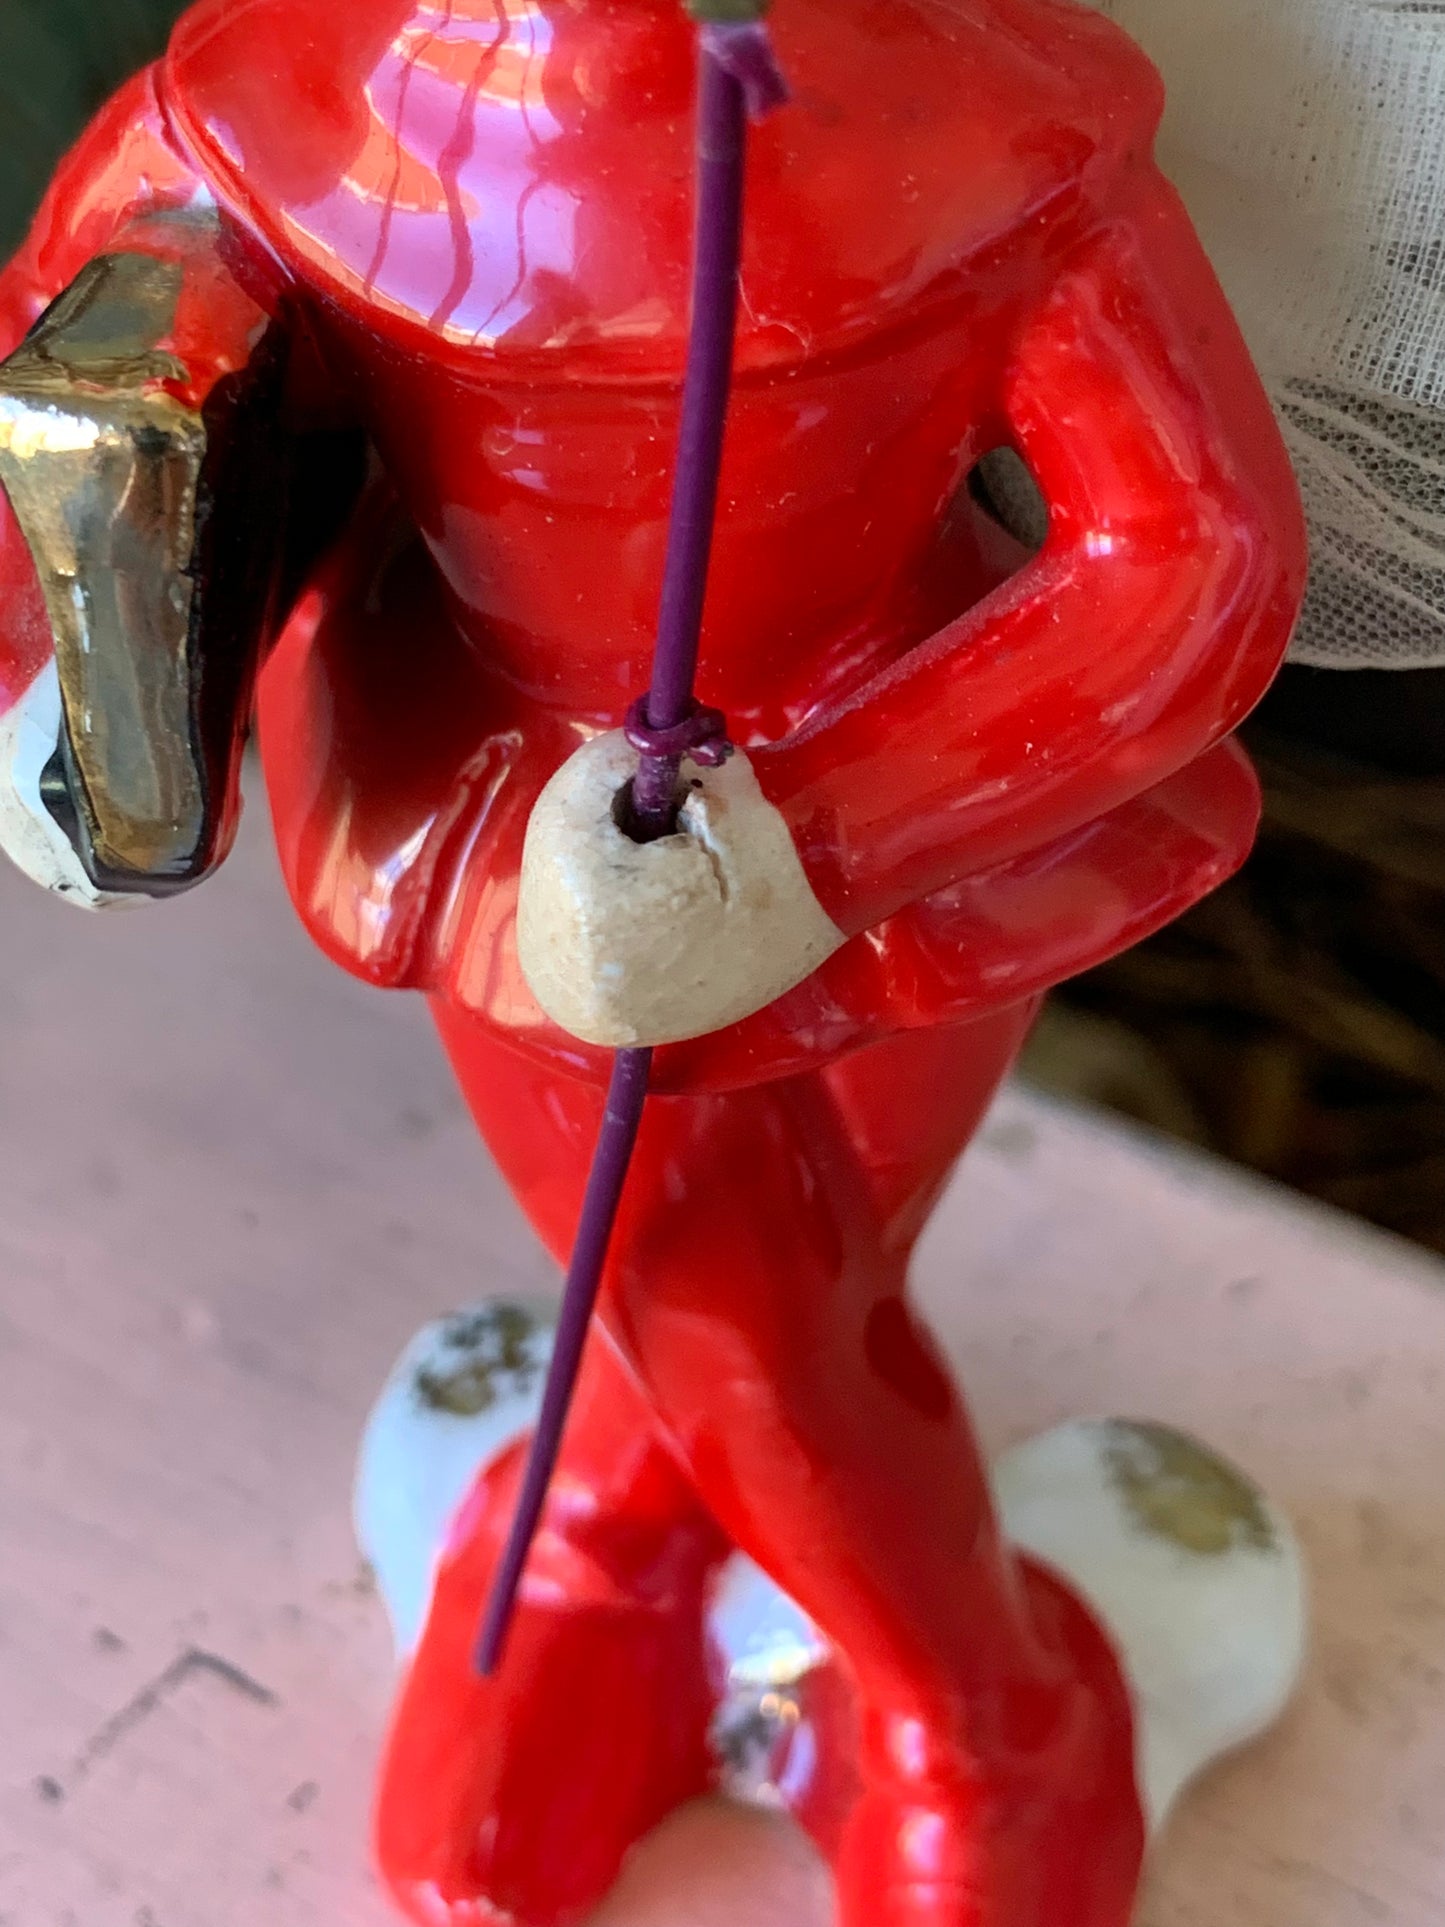 Vintage devil pixie elf figurine